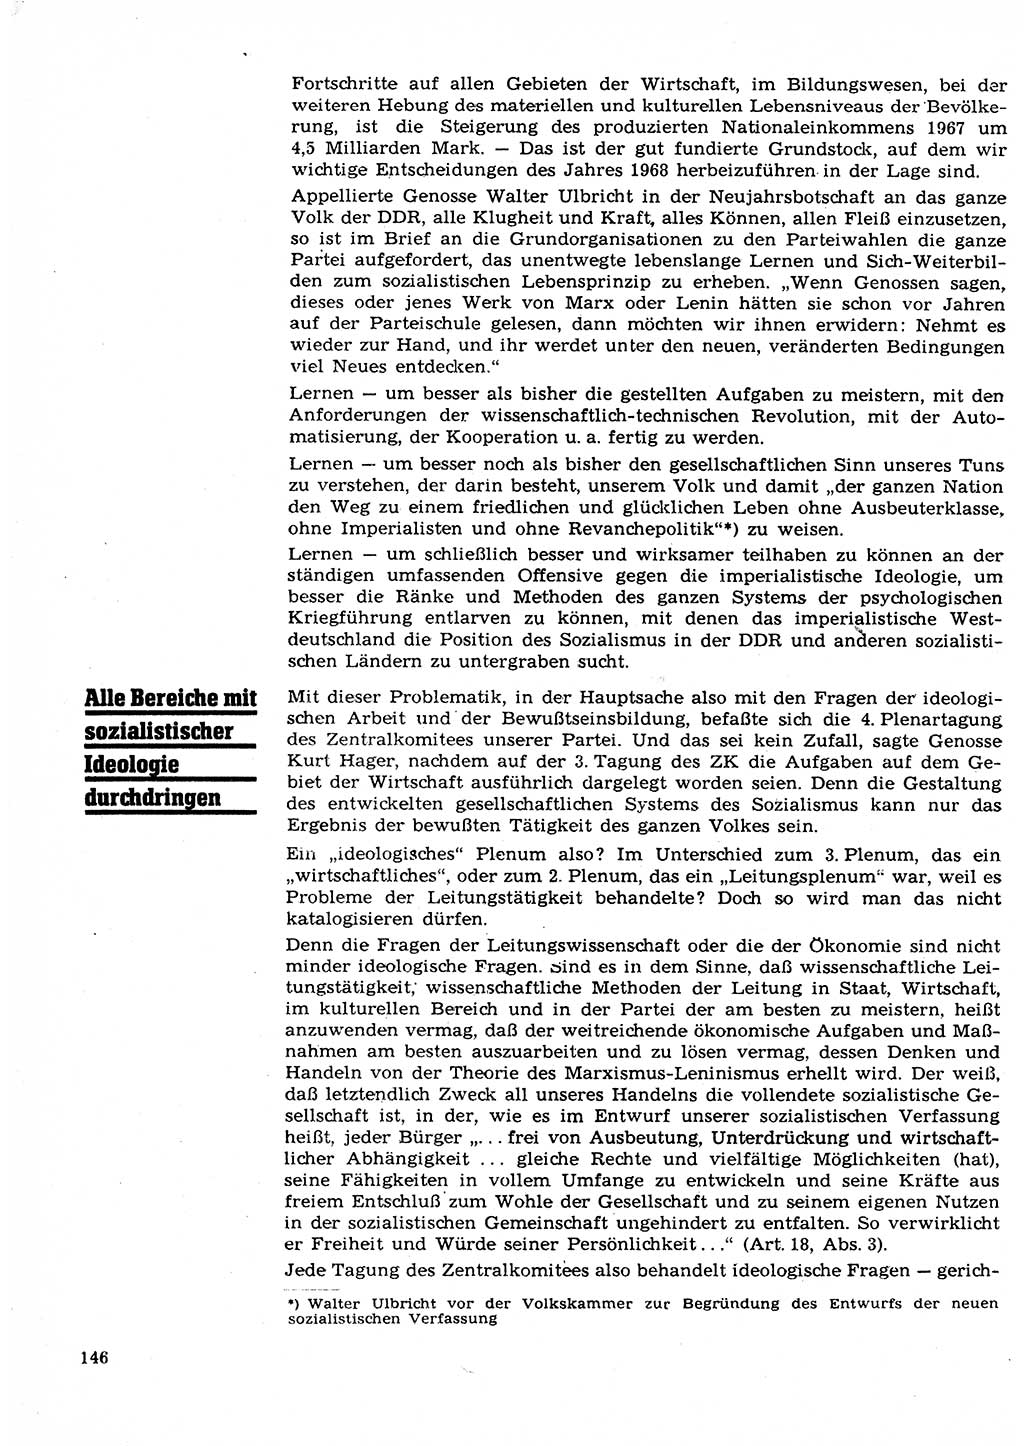 Neuer Weg (NW), Organ des Zentralkomitees (ZK) der SED (Sozialistische Einheitspartei Deutschlands) für Fragen des Parteilebens, 23. Jahrgang [Deutsche Demokratische Republik (DDR)] 1968, Seite 146 (NW ZK SED DDR 1968, S. 146)